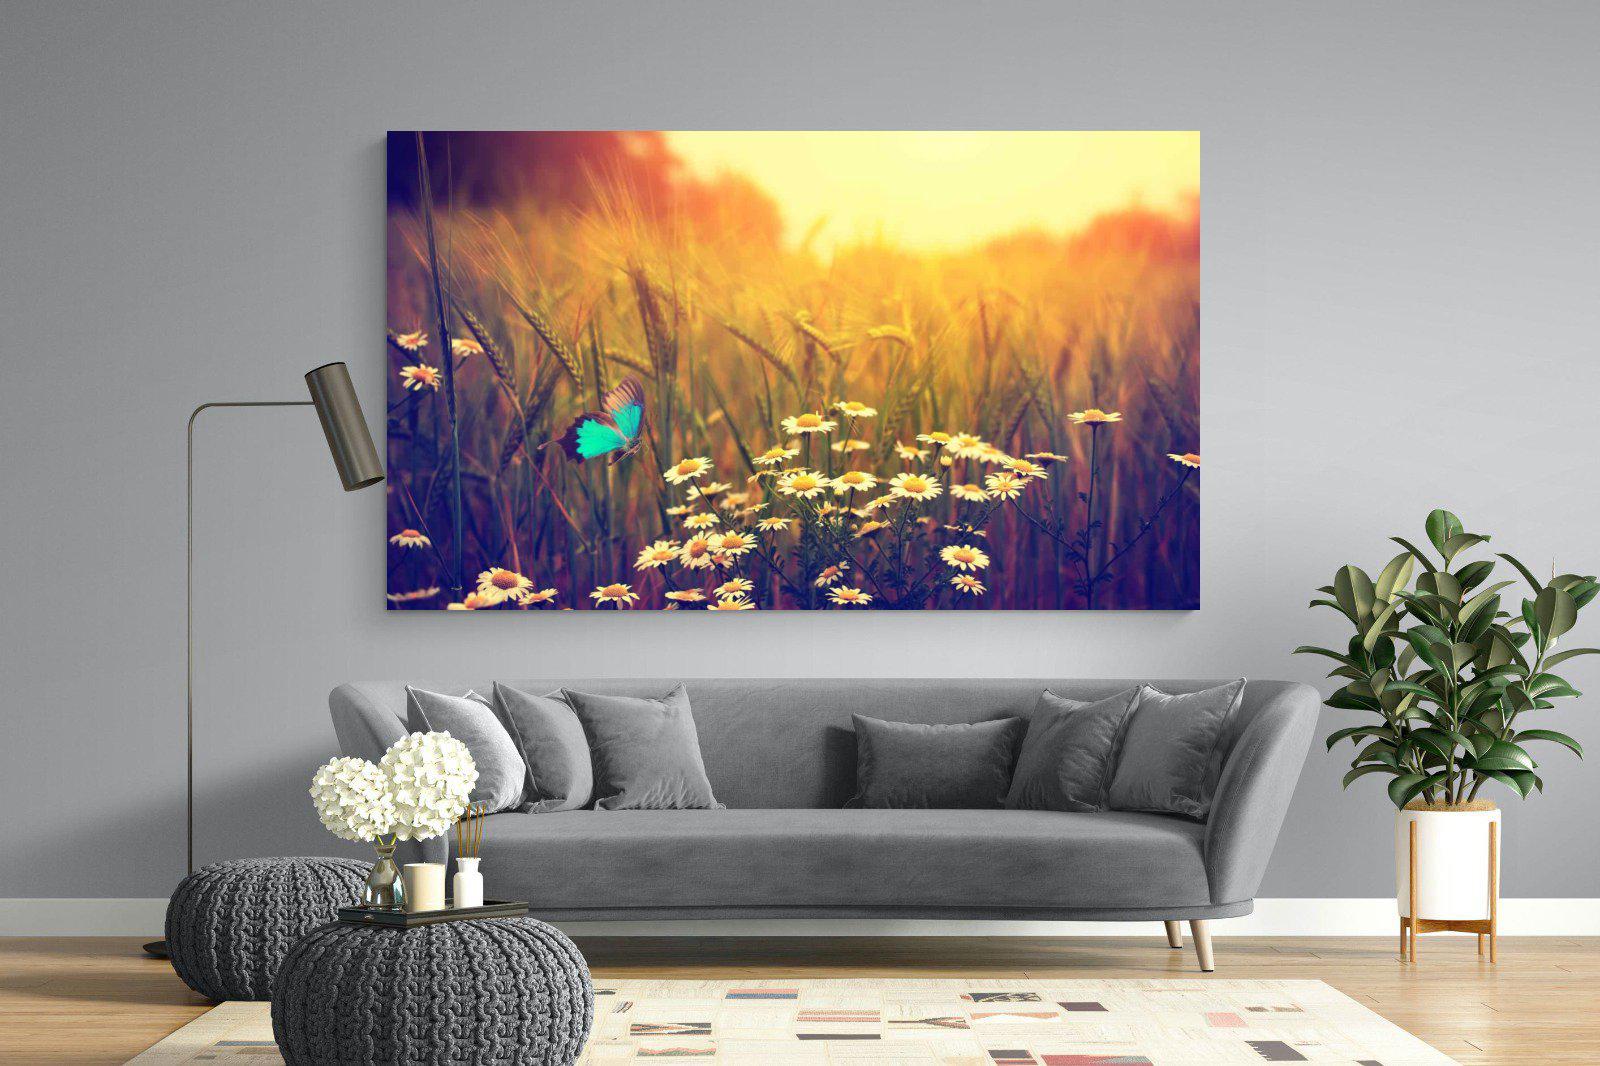 Daisy Flutter-Wall_Art-220 x 130cm-Mounted Canvas-No Frame-Pixalot